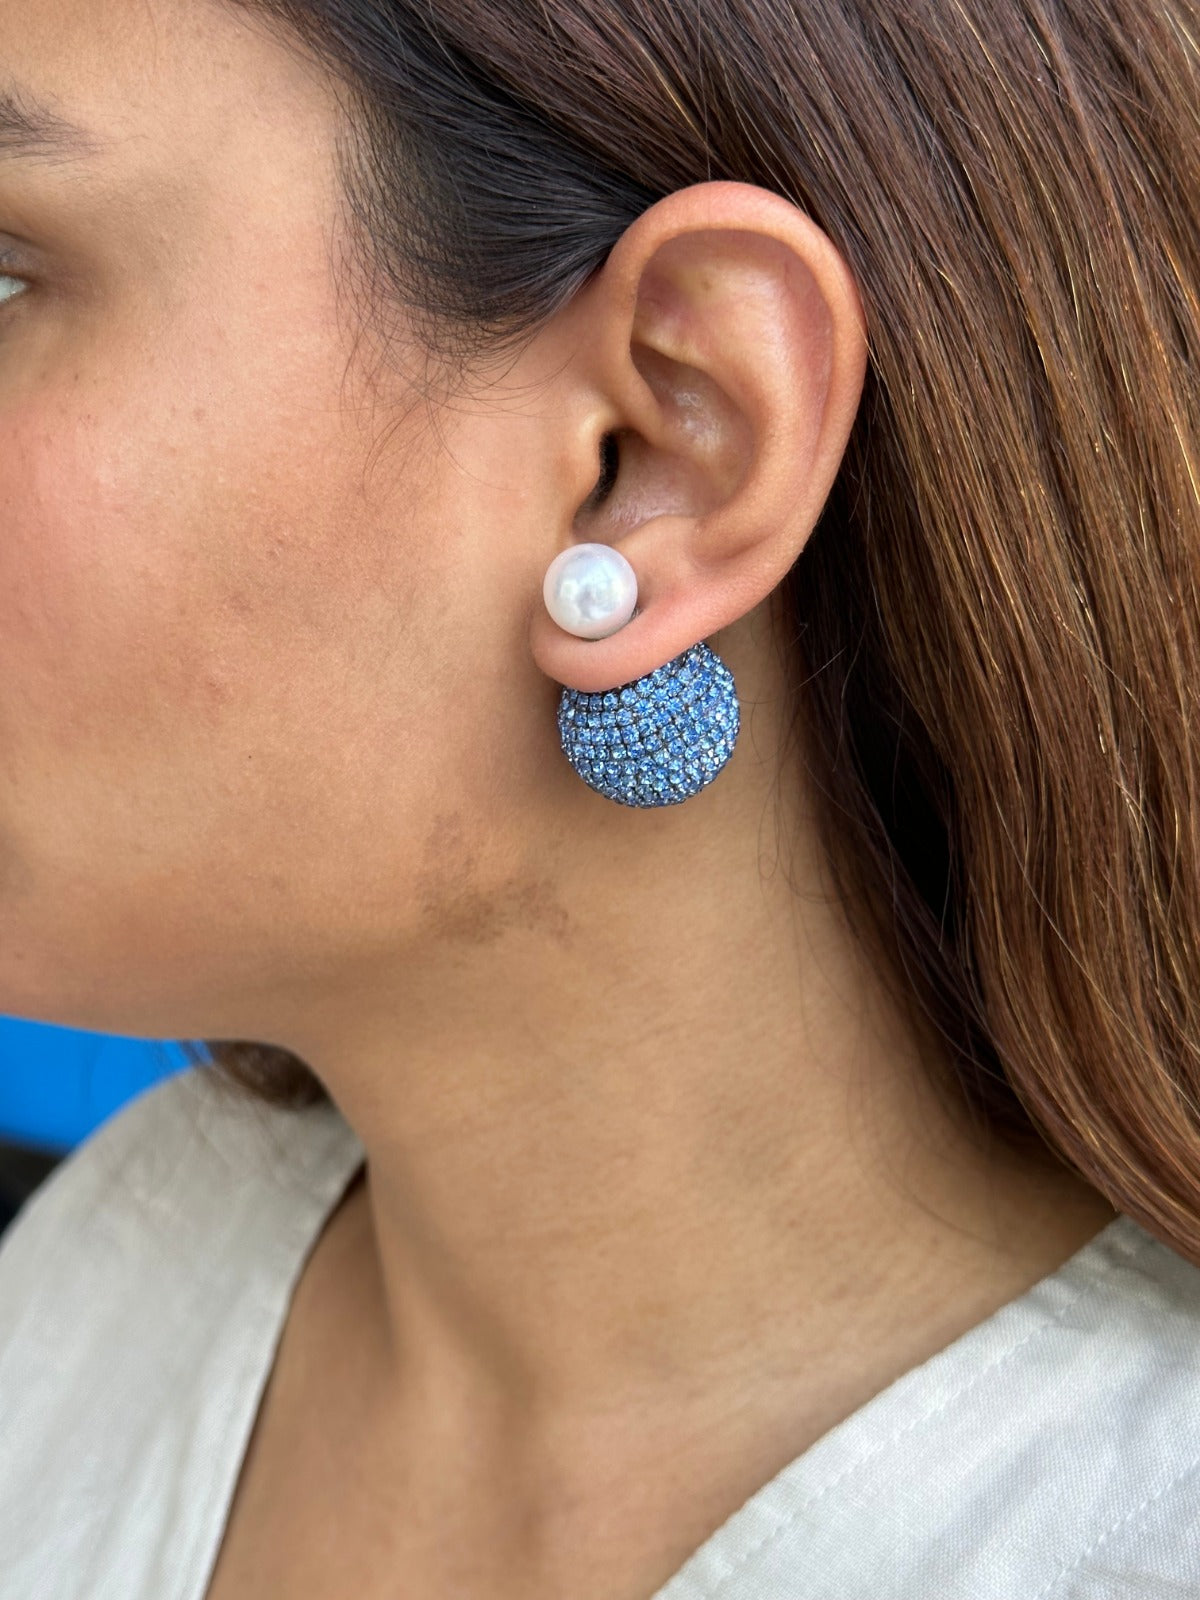 Amama,Nano Meteor Earrings In Cerulean Blue